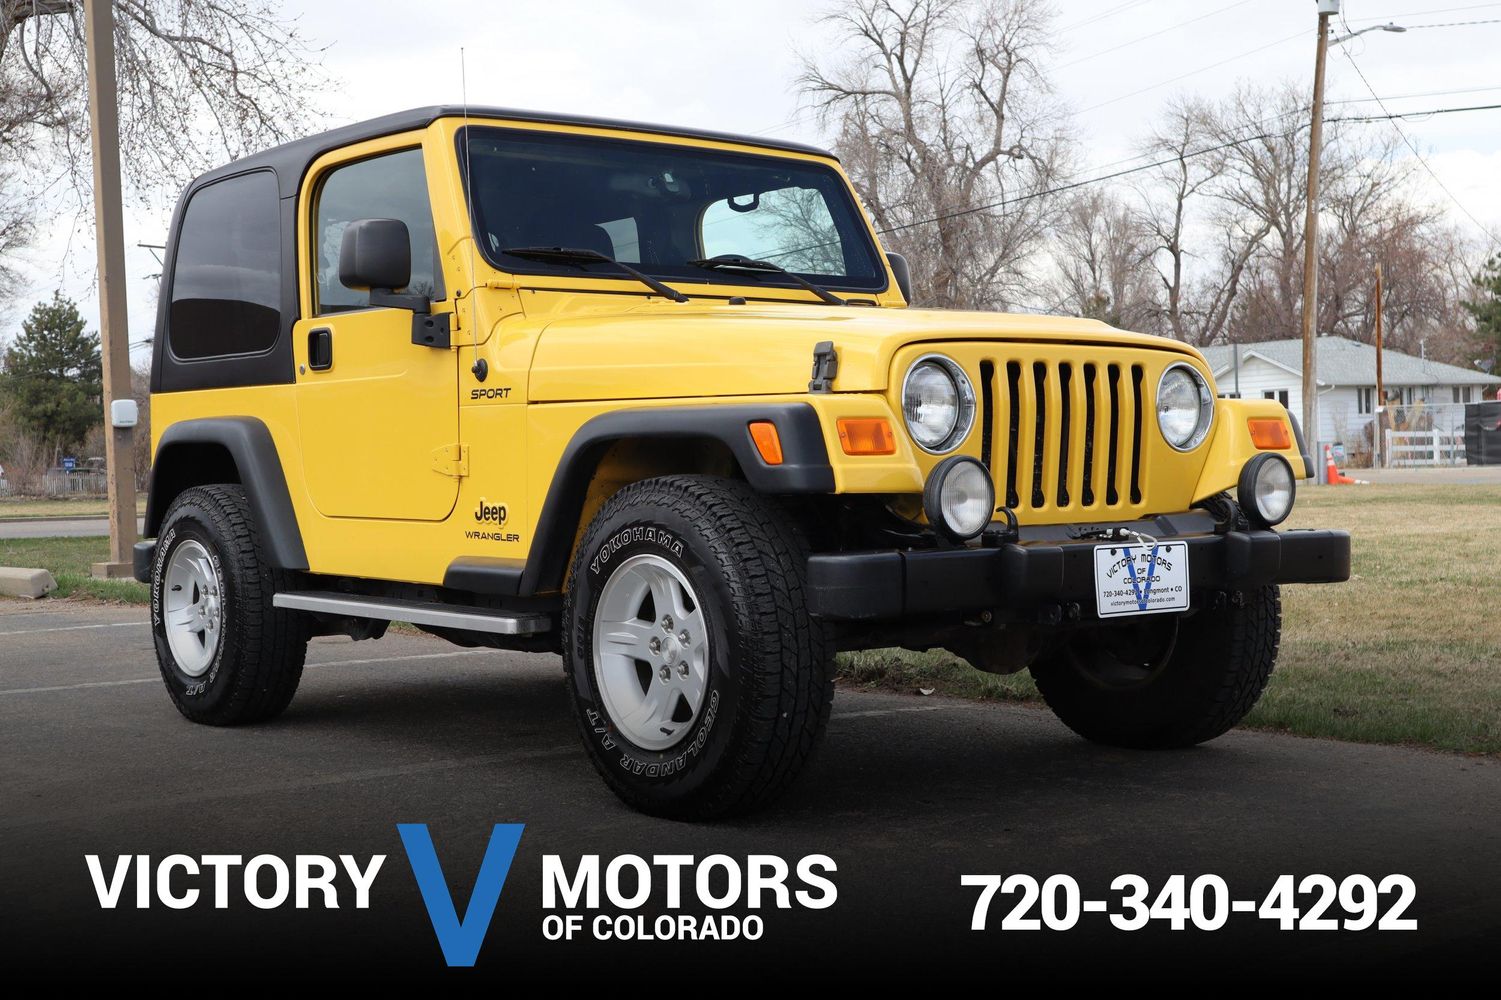 2005 Jeep Wrangler Sport | Victory Motors of Colorado